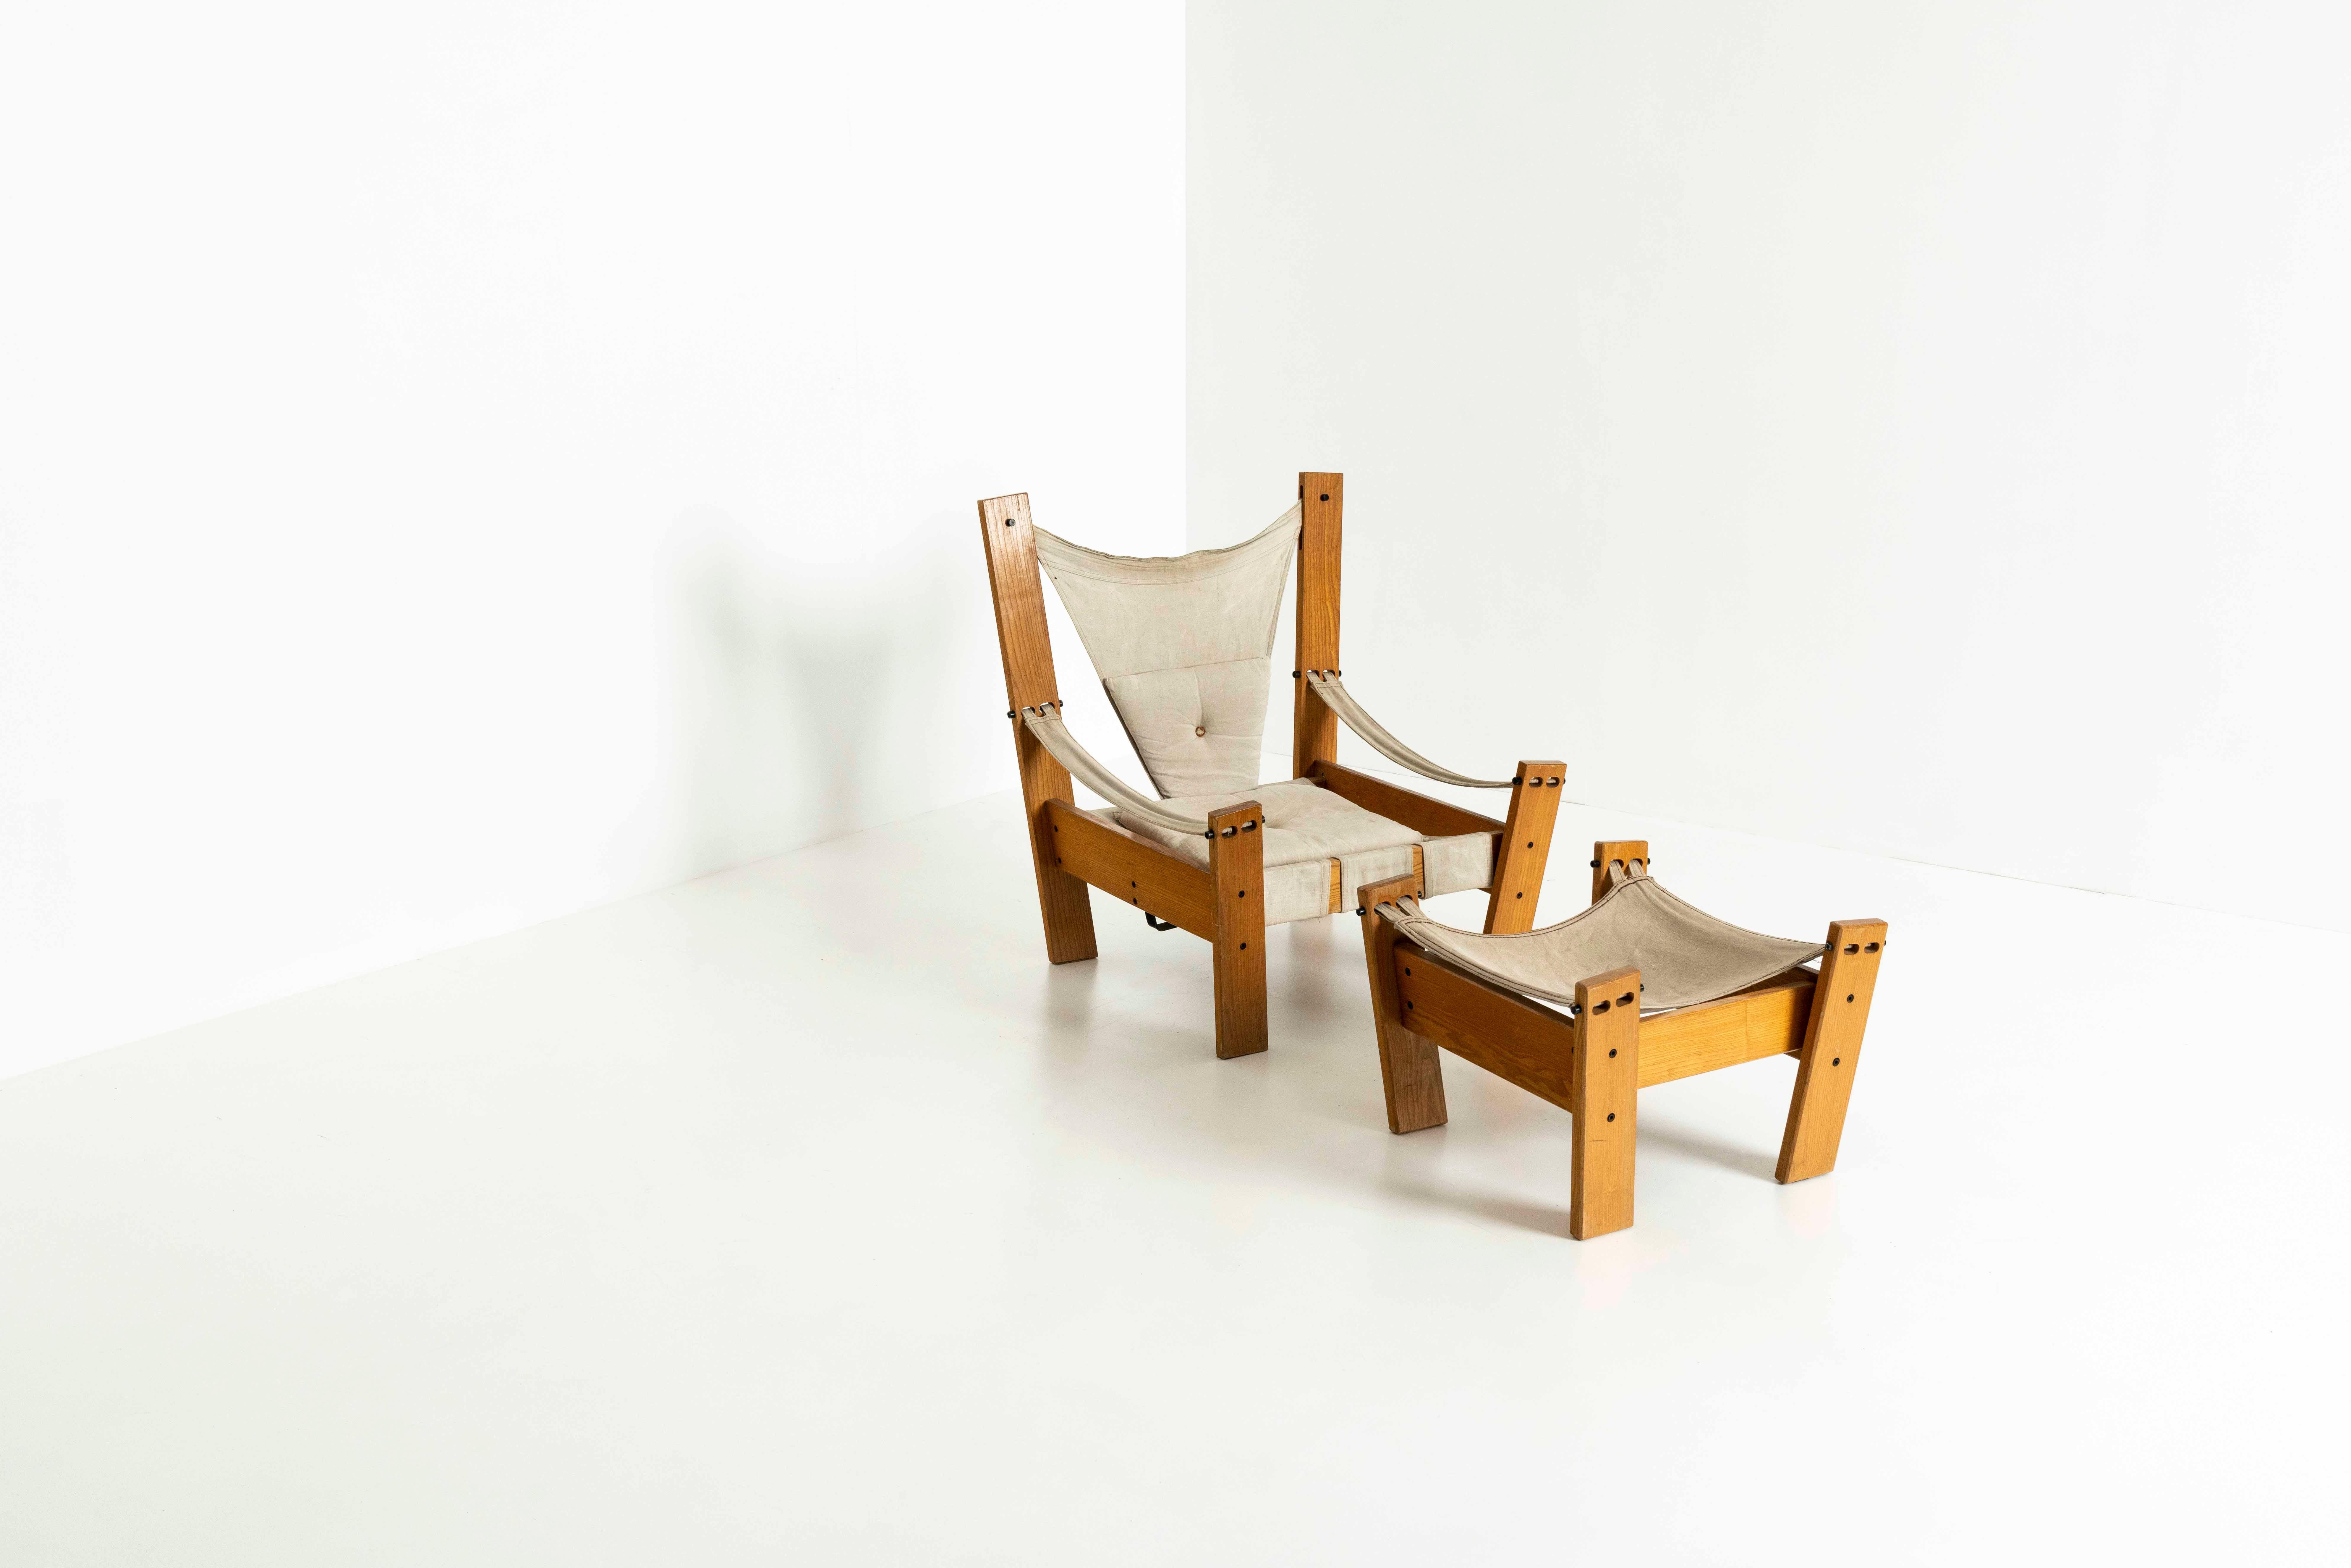 Einzigartiger Loungesessel im niederländischen Design aus Kiefernholz, Metall und Segeltuch mit passendem Hocker. Dieser Stuhl wurde von John de Haard für 'Gebroeders Jonkers' entworfen. Der Stuhl hat ein großartiges Design mit schönen Details; mit